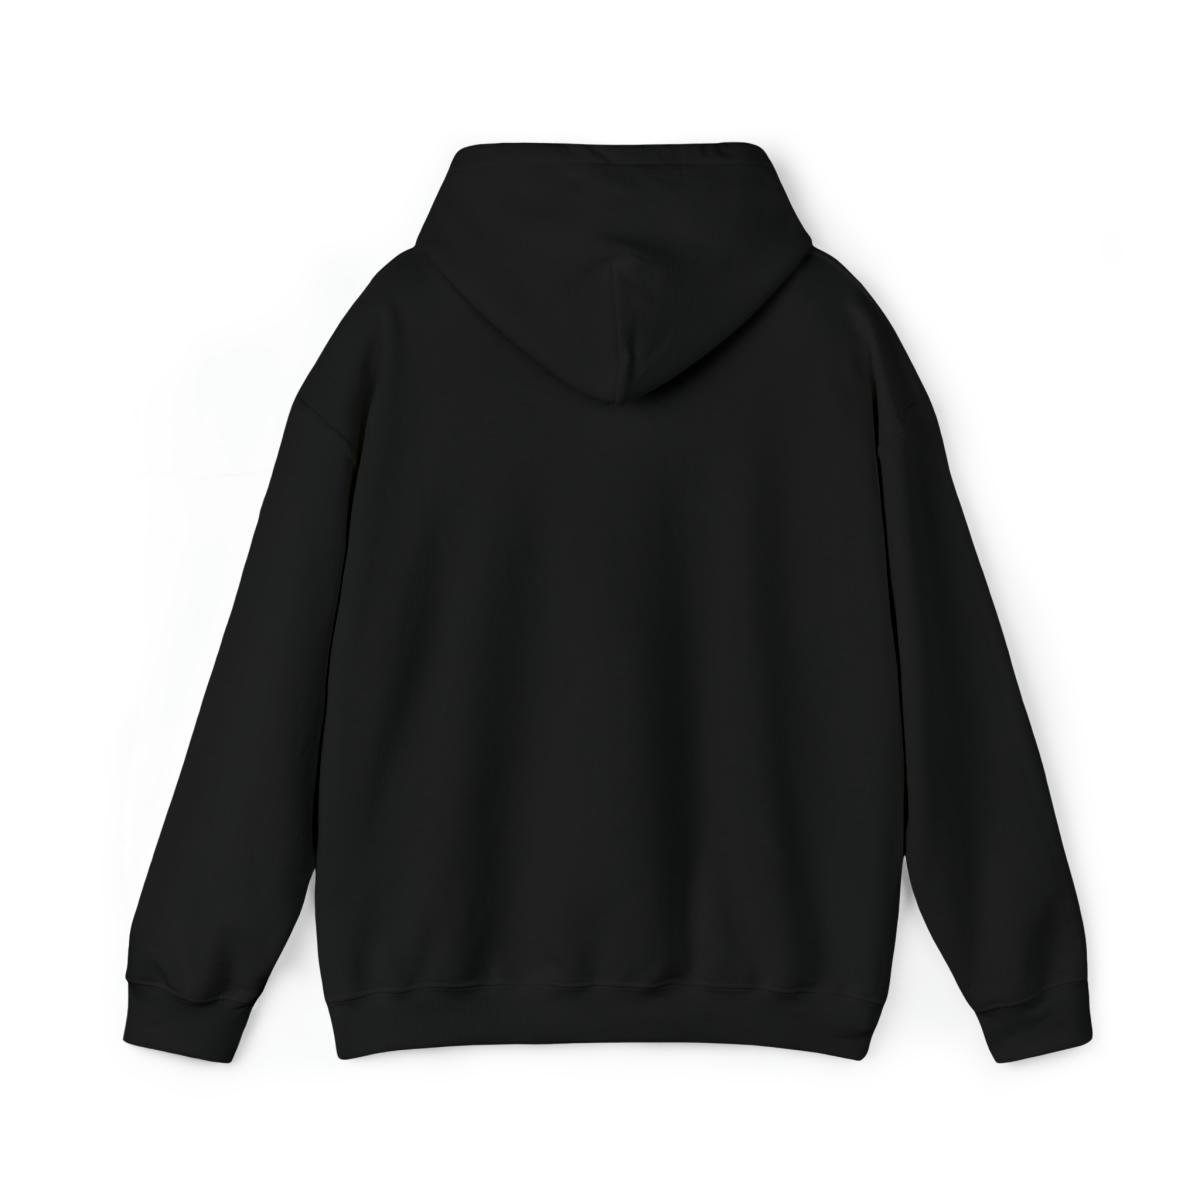 Slamcat – Cross Sticks Pullover Hooded Sweatshirt